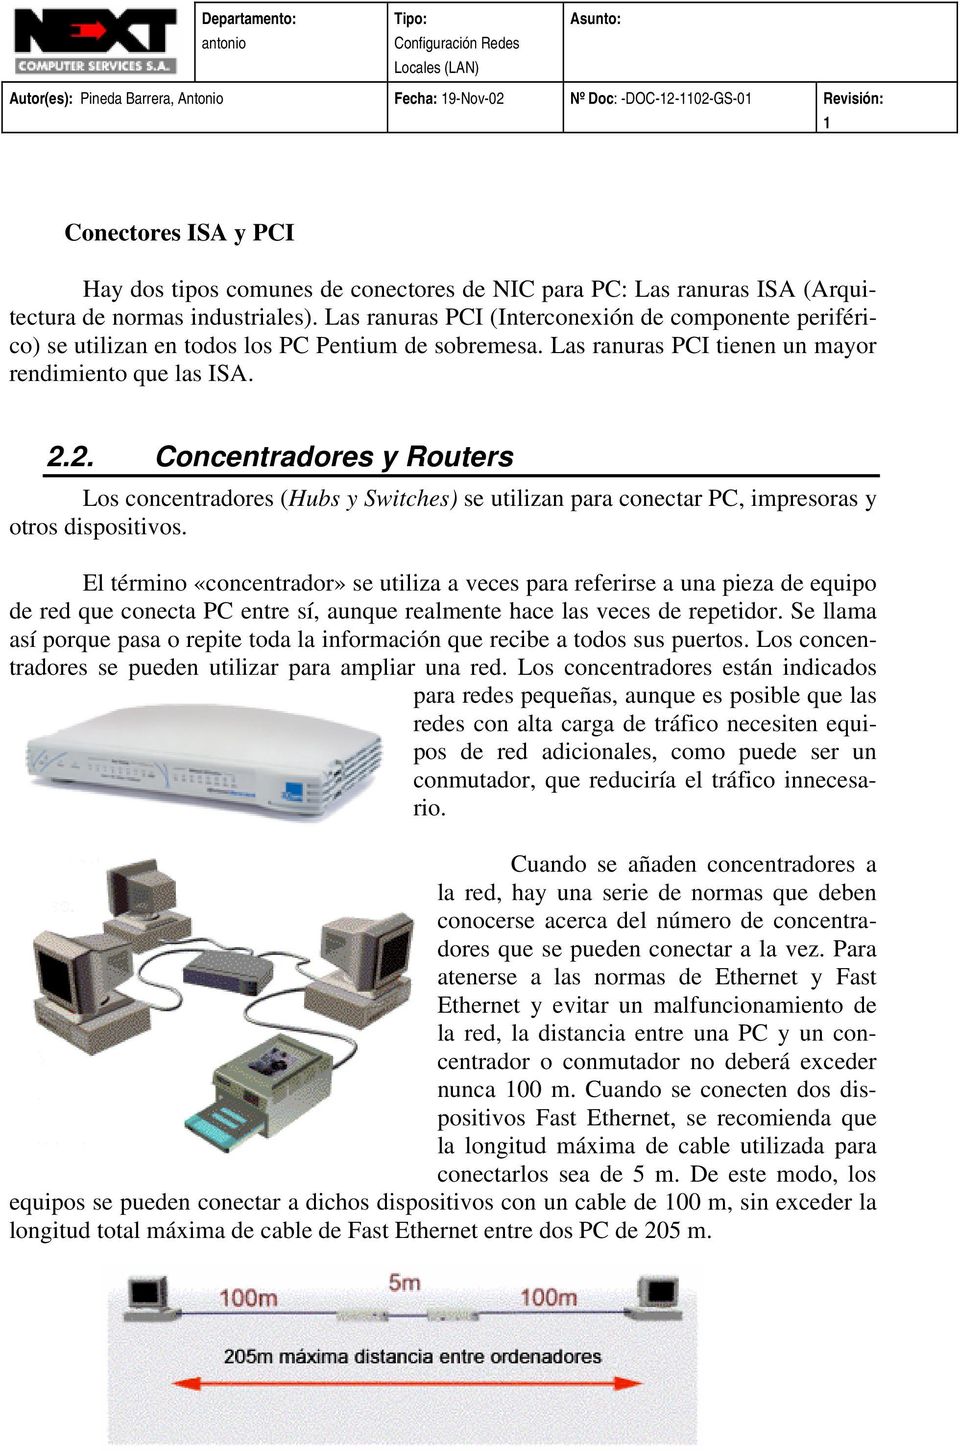 2. Concentradores y Routers Los concentradores (Hubs y Switches) se utilizan para conectar PC, impresoras y otros dispositivos.